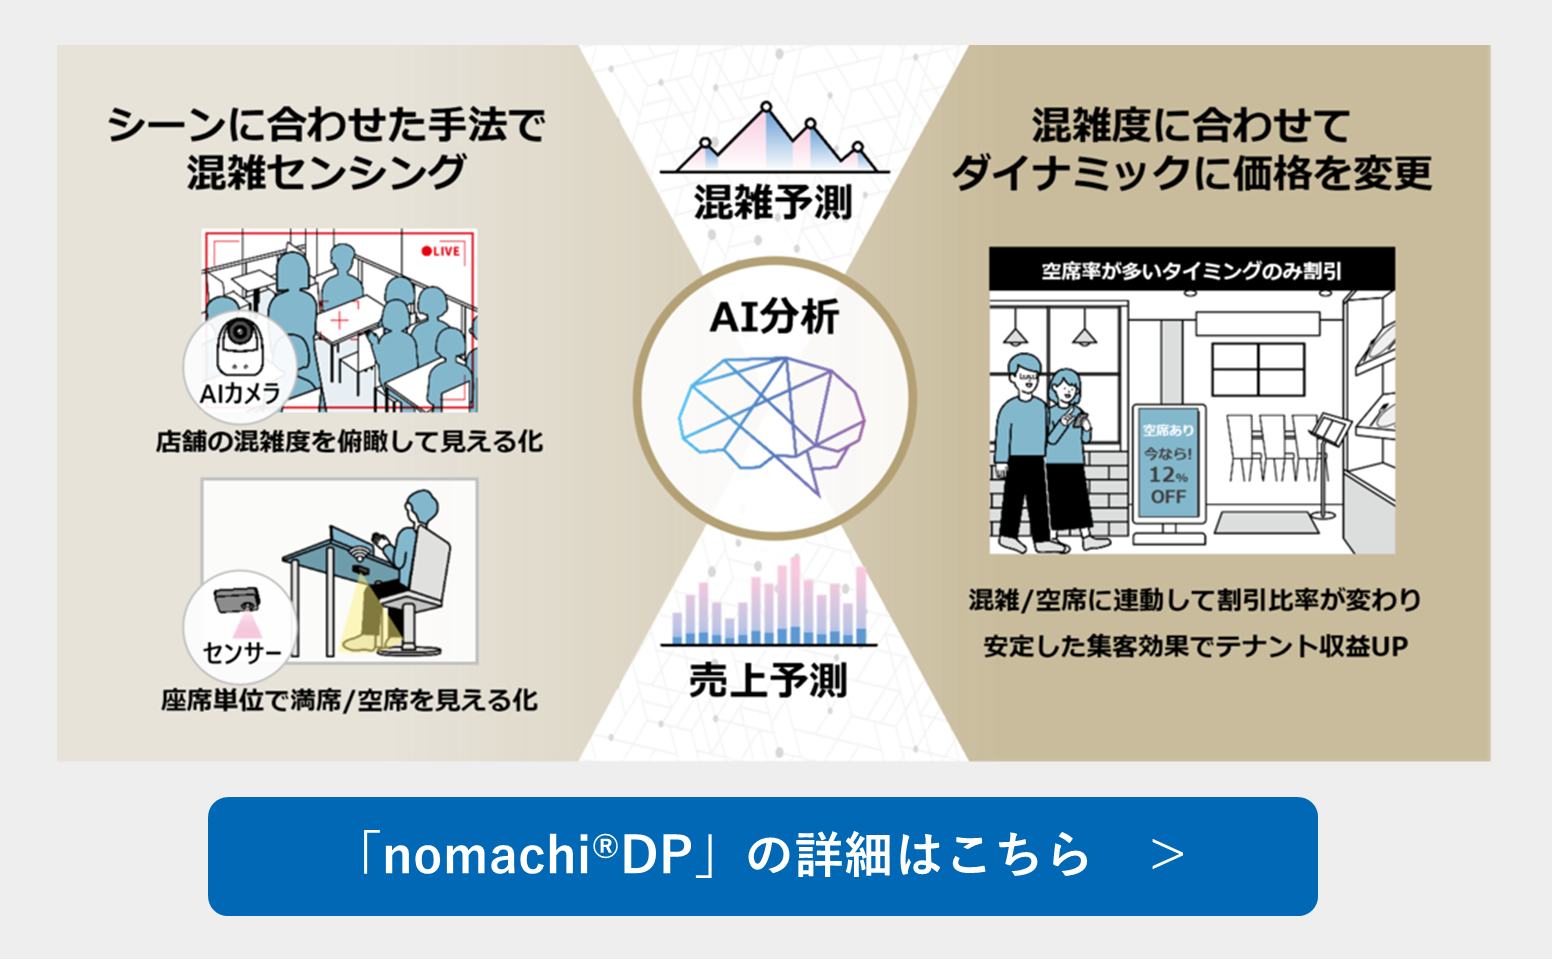 混雑連動ダイナミックプライシング「nomachi(R)DP」